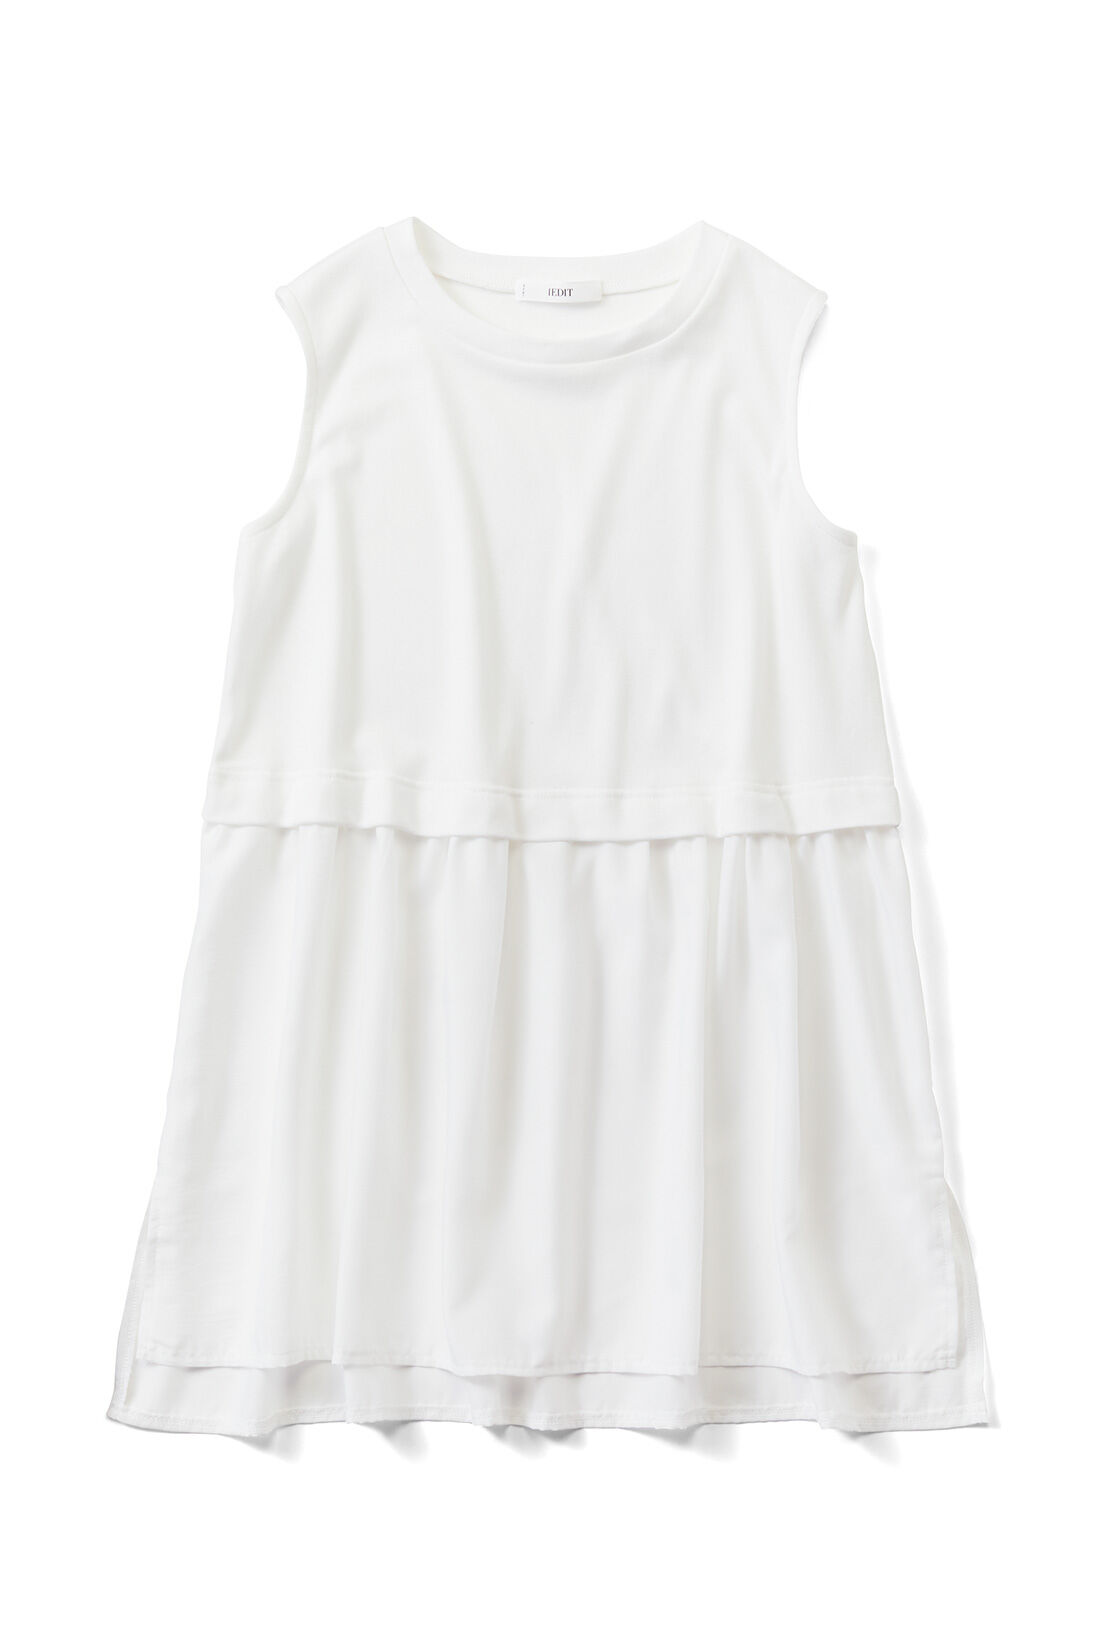 IEDIT|IEDIT[イディット]　レイヤードで体形カバーもかなう すそシャツデザインのホワイトロングカットソータンクトップの会〈ホワイト〉|〈ギャザー〉